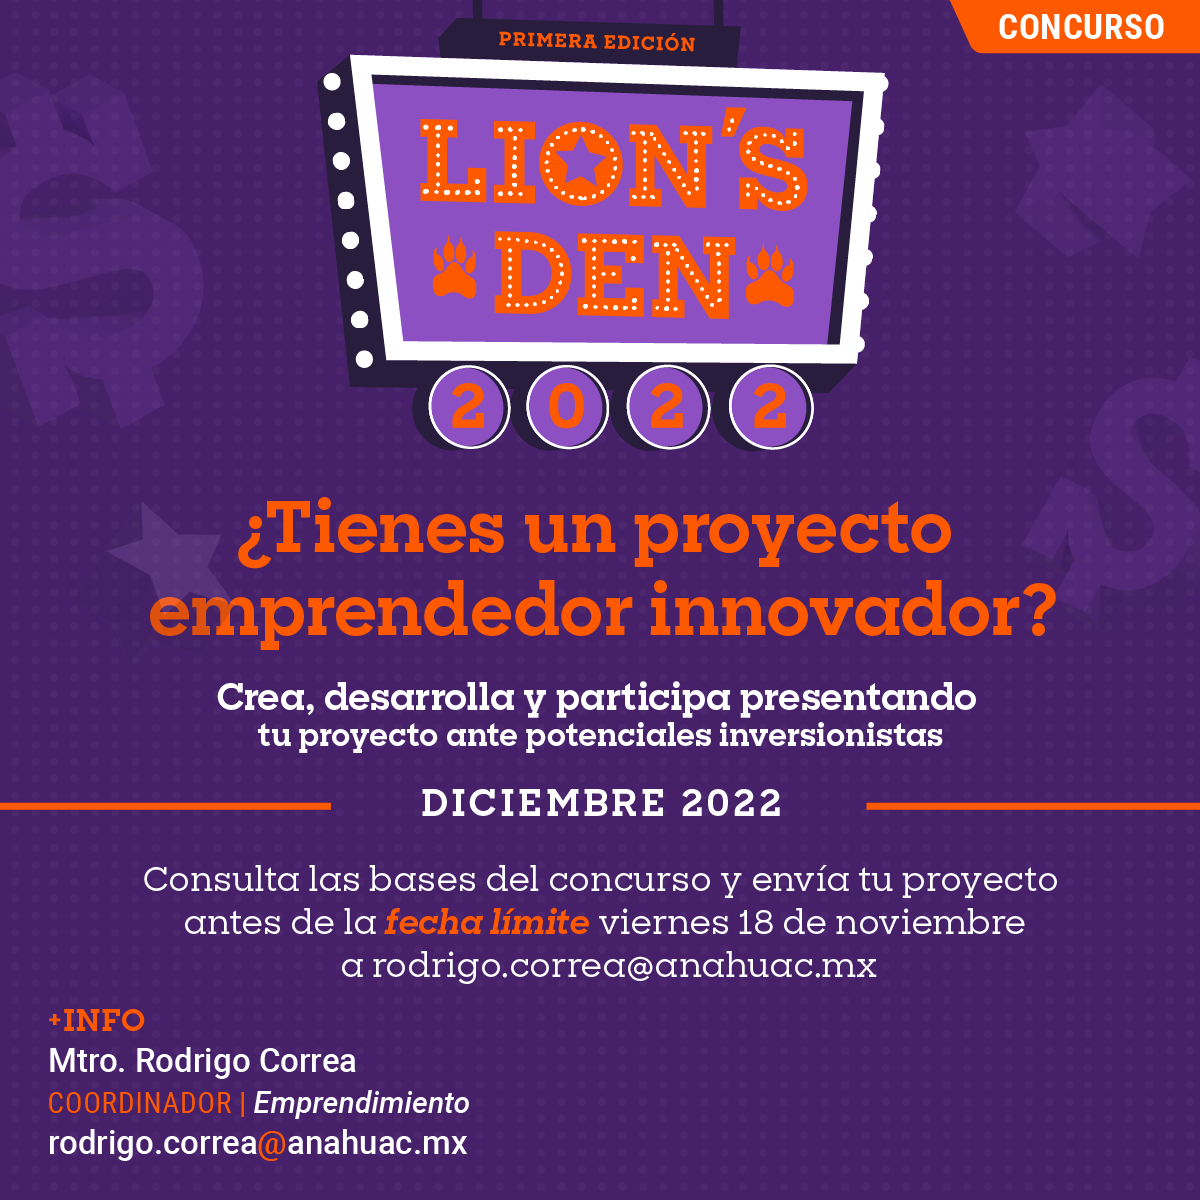 Concurso de Emprendimiento Lion’s Den 2022